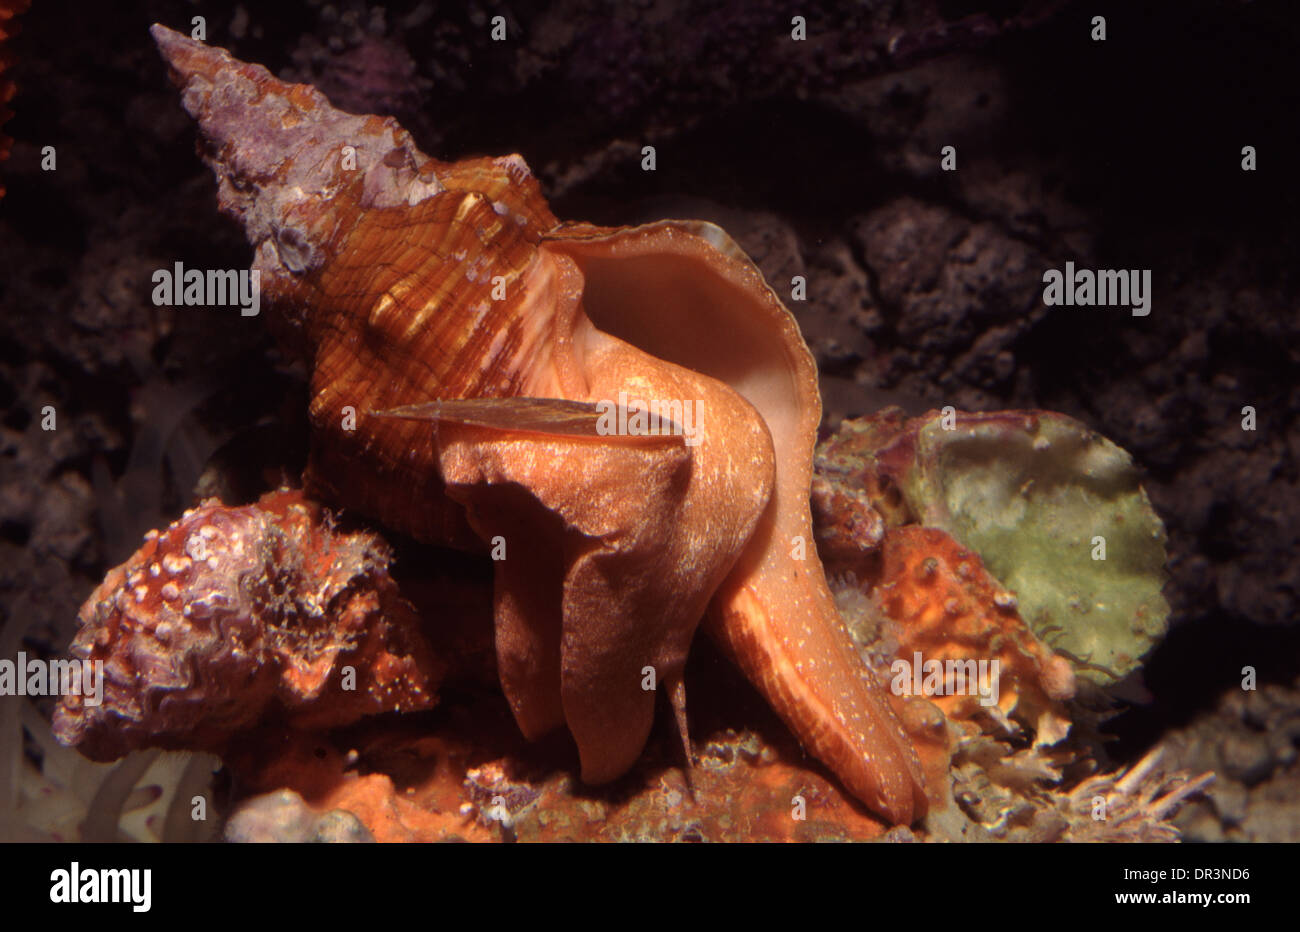 Trapezium horse conch (Pleuroploca trapezium) Stock Photo